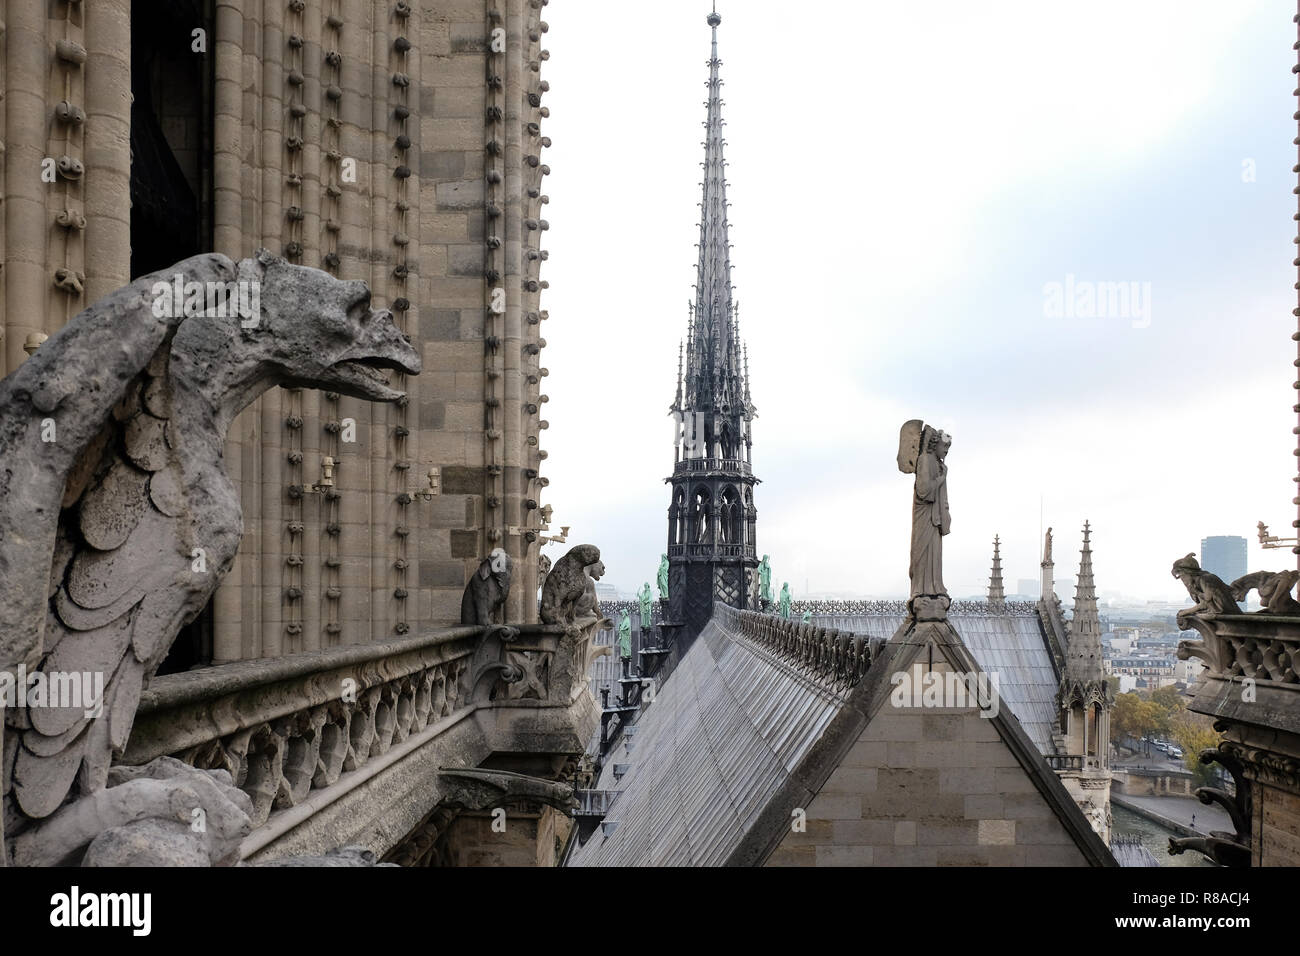 Chimères (gargouilles) de la Cathédrale Notre Dame de Paris surplombant Paris, France Banque D'Images